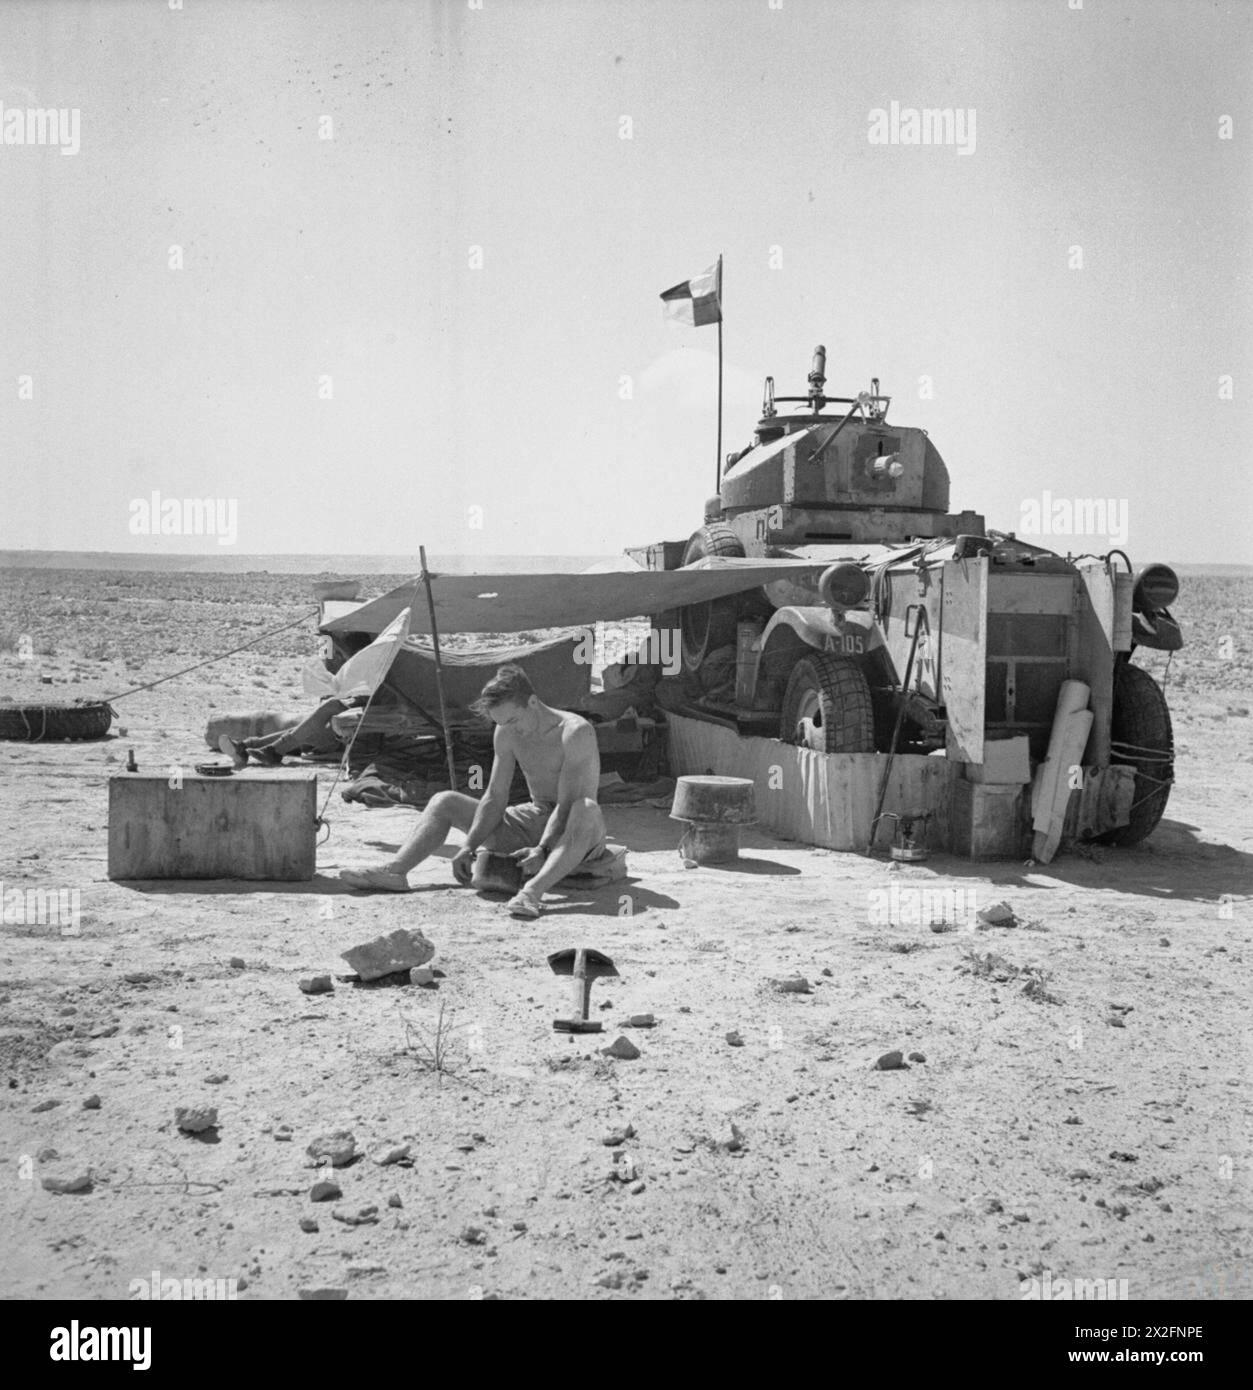 ROYAL AIR FORCE OPERATIONEN IM NAHEN OSTEN UND NORDAFRIKA, 1939-1943. - Eine Besatzung der Nr. 2 Panzerwagen-Kompanie RAF, die mit ihrem Fordson Panzerwagen unterwegs war, während einer Patrouille in der Western Desert Royal Air Force, Wartungseinheit 2 Stockfoto